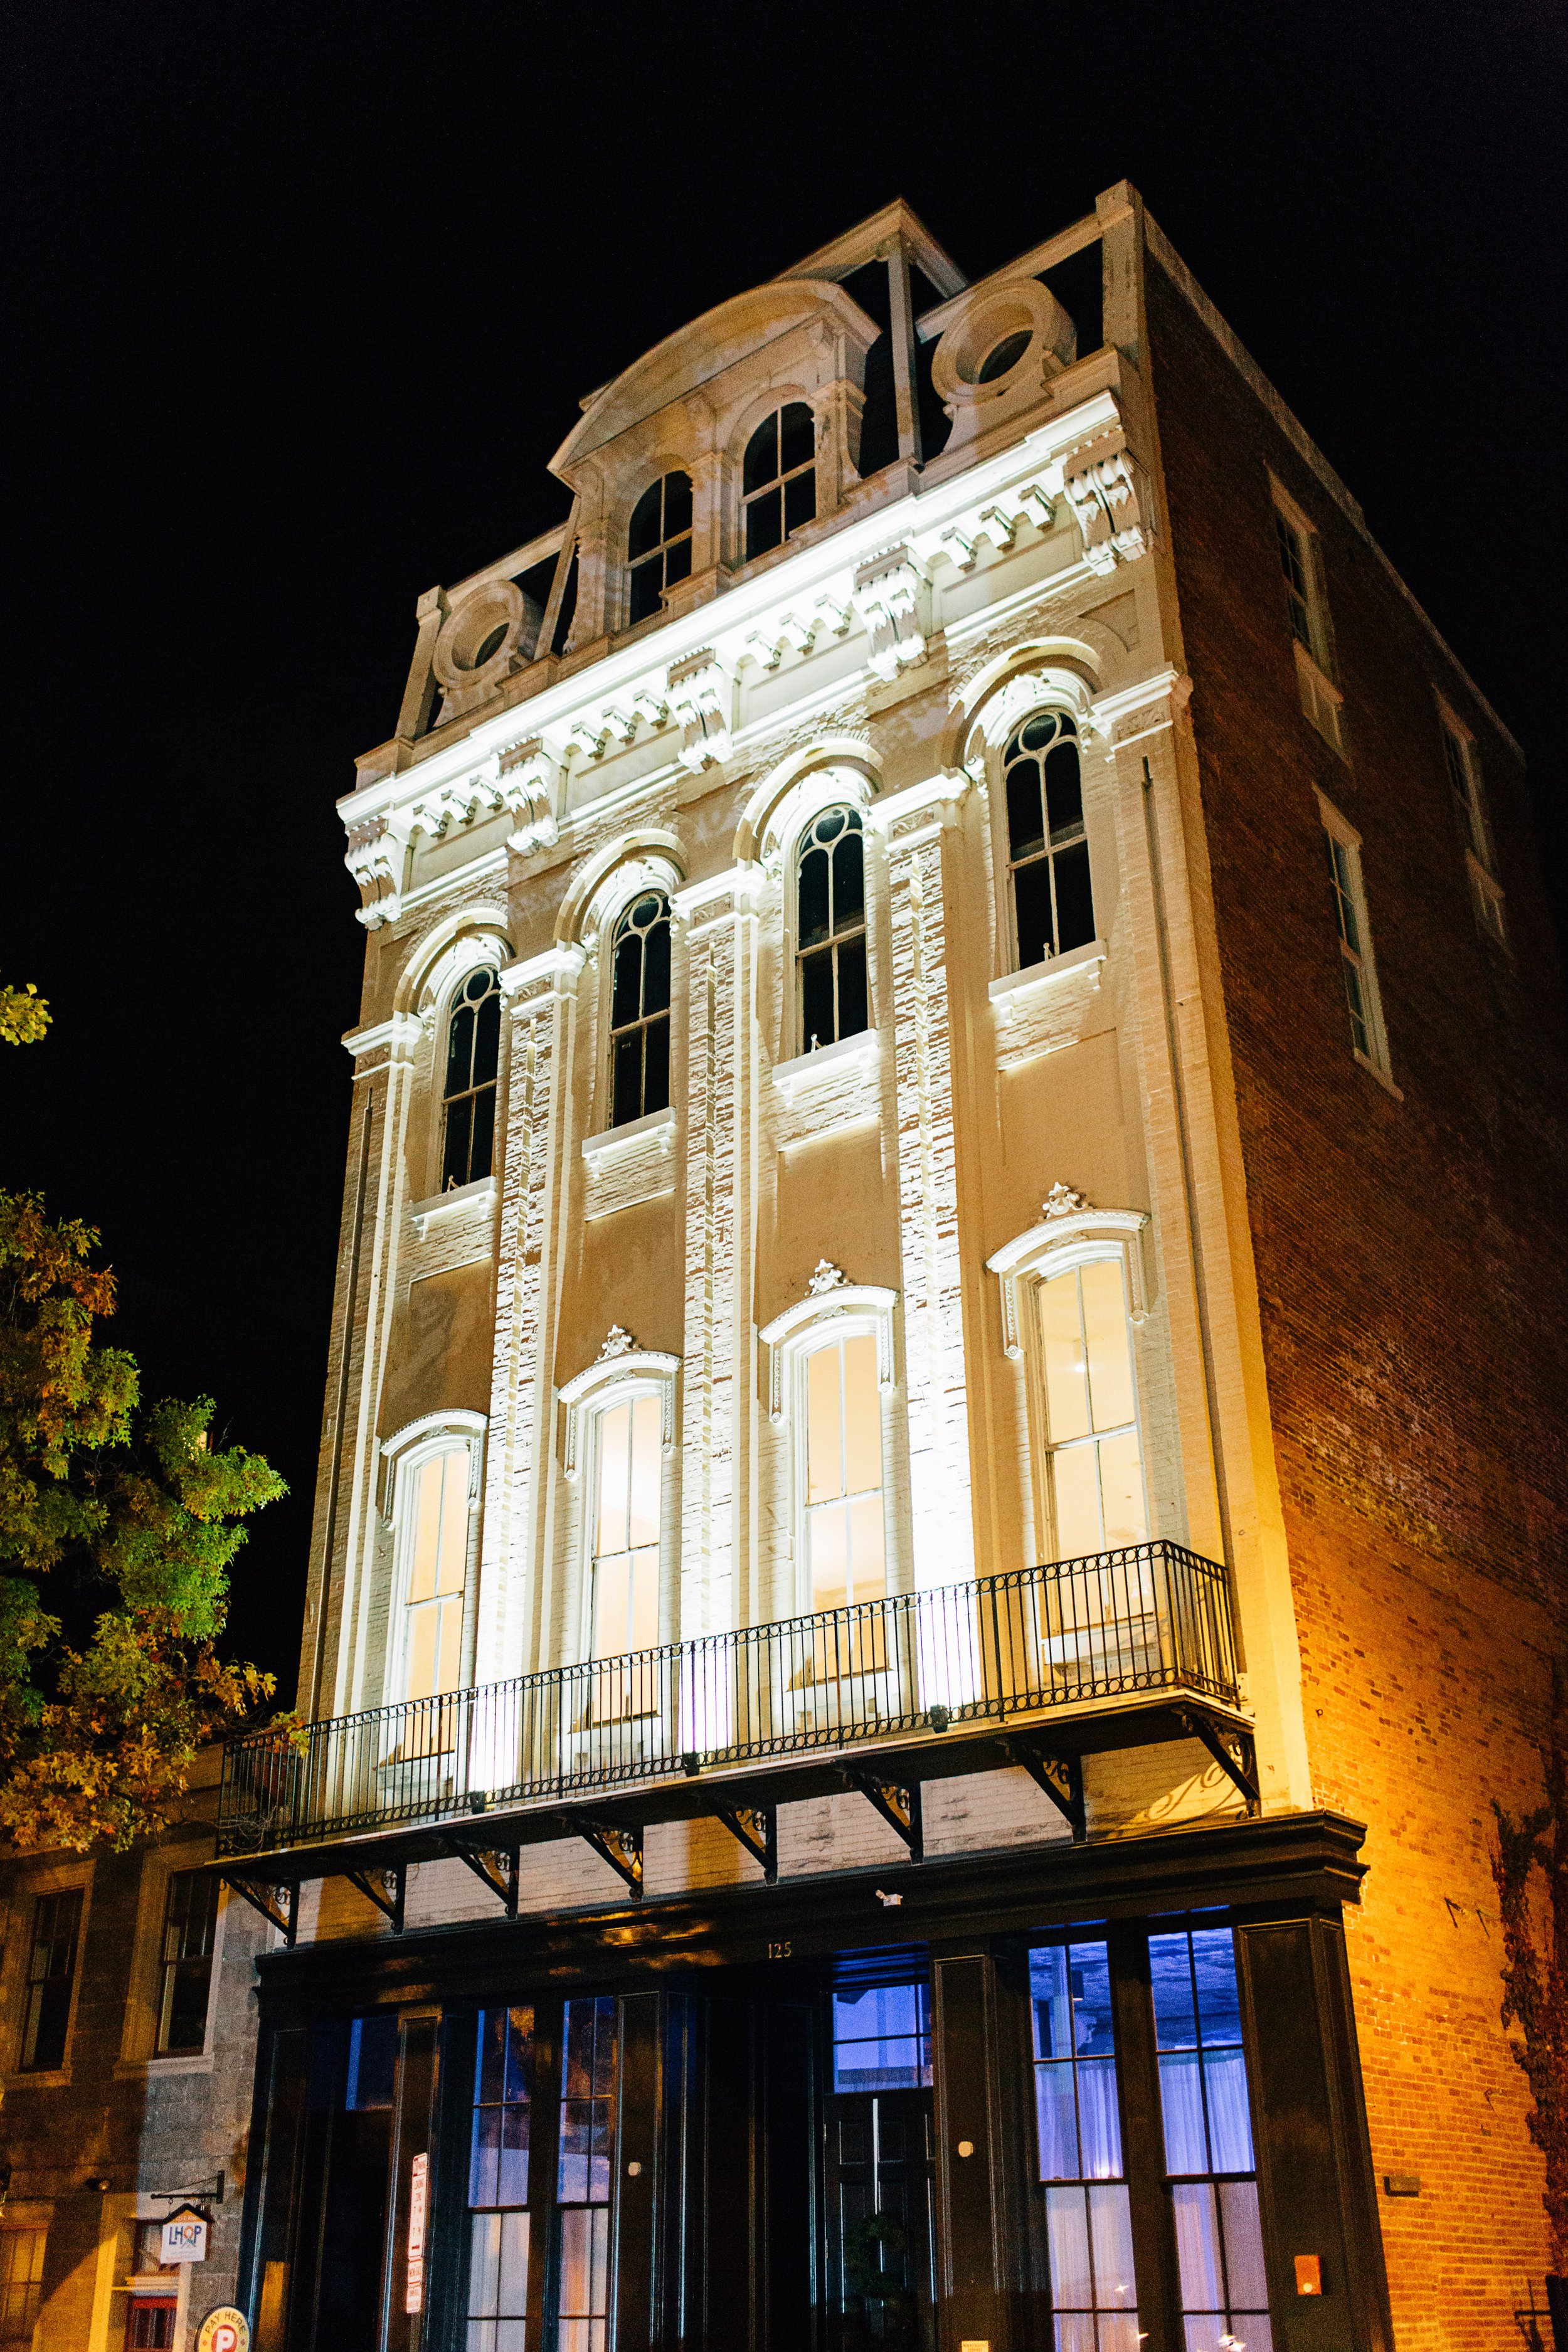 Excelsior facade at night bright light